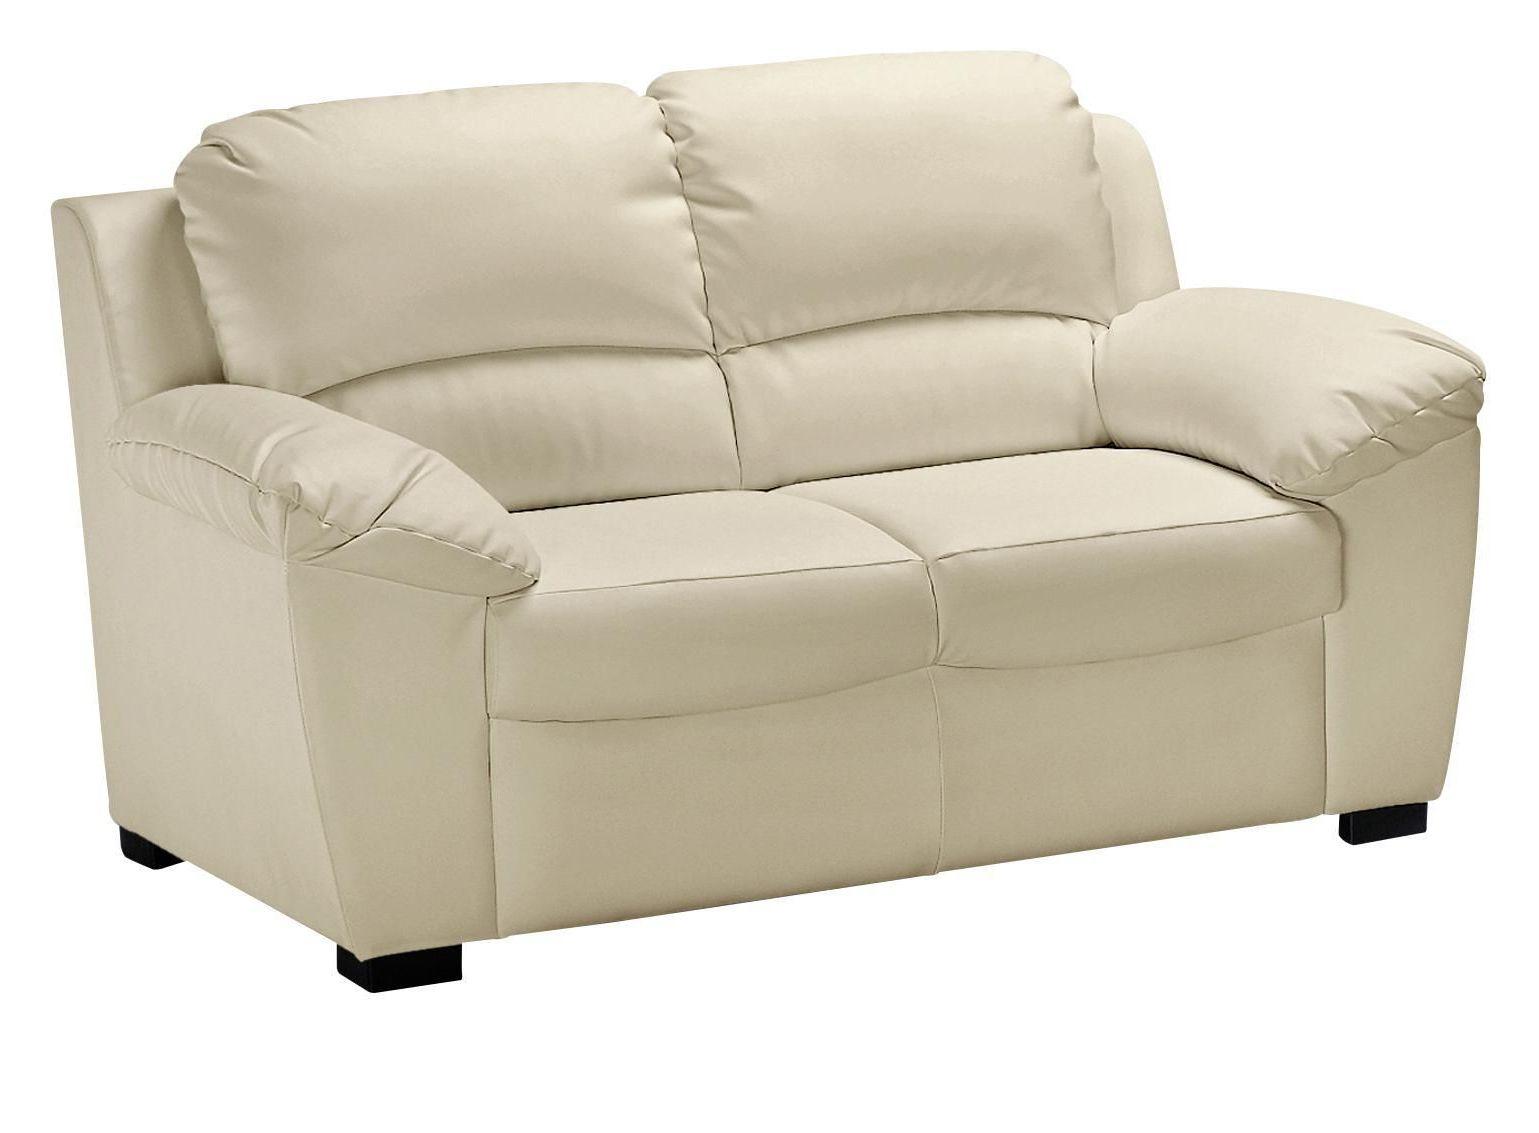 Zweisitzer-Sofa "Danilo" , beige - Beige/Schwarz, KONVENTIONELL, Kunststoff/Textil (145/90/90cm) - MID.YOU